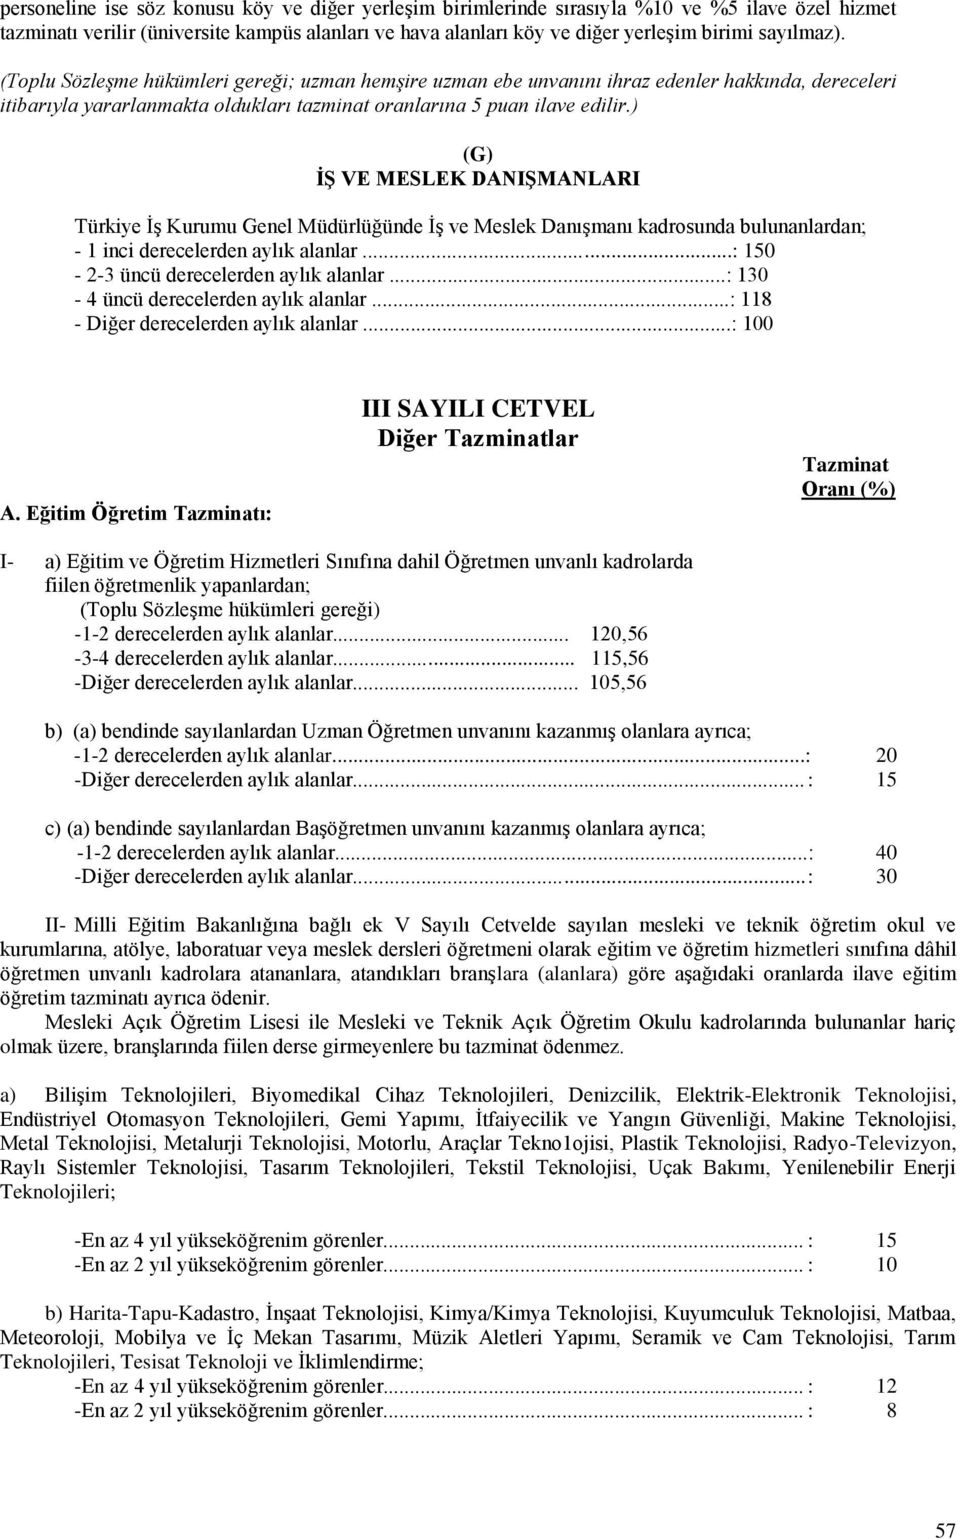 ) (G) İŞ VE MESLEK DANIŞMANLARI Türkiye İş Kurumu Genel Müdürlüğünde İş ve Meslek Danışmanı kadrosunda bulunanlardan; - 1 inci derecelerden aylık alanlar...: 150-2-3 üncü derecelerden aylık alanlar.